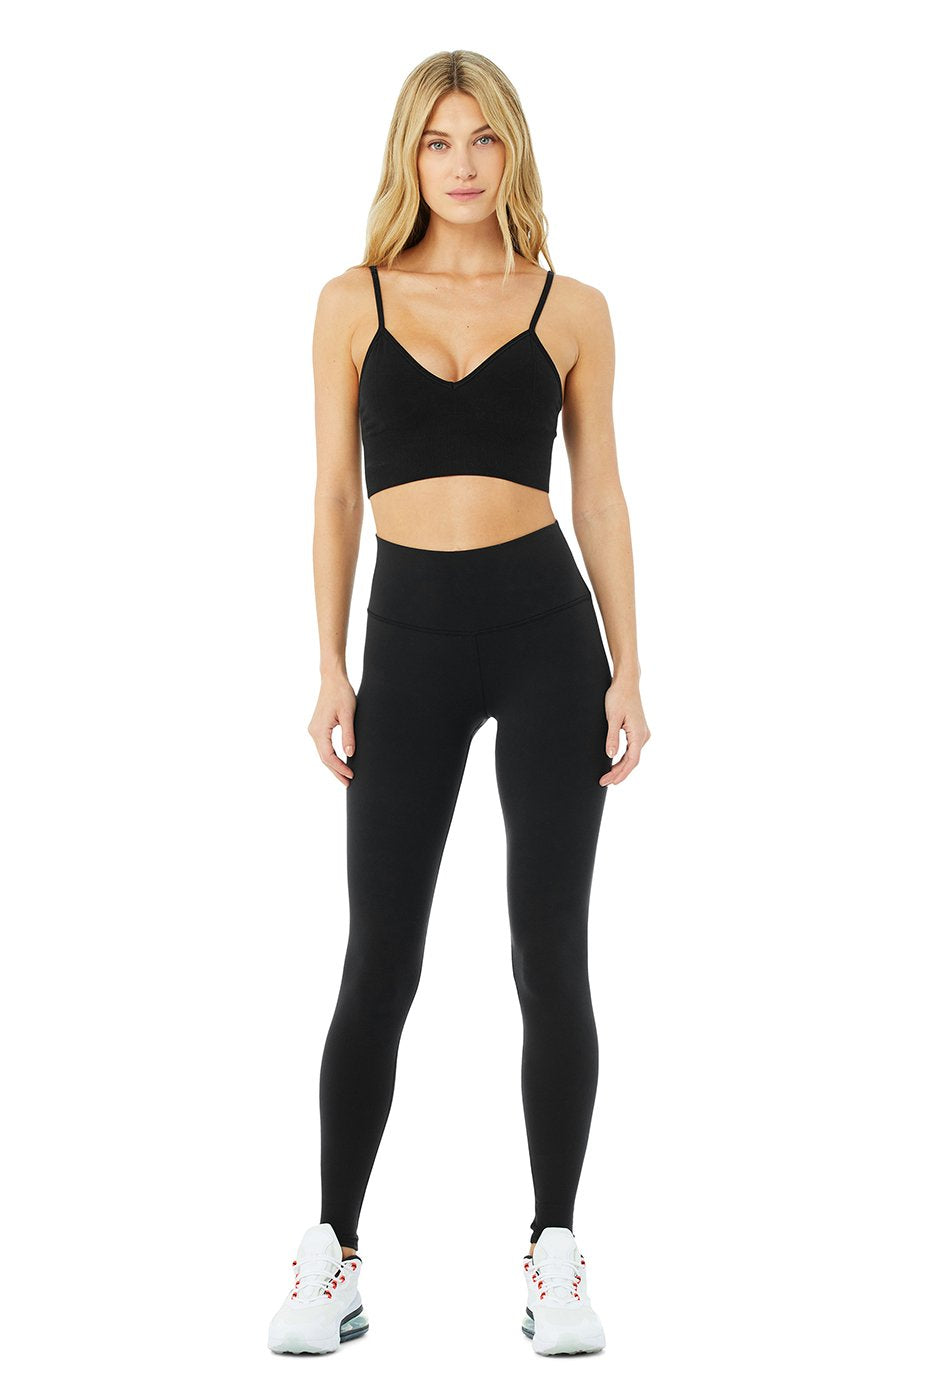 alo Yoga Airbrush legging for women – Soccer Sport Fitness